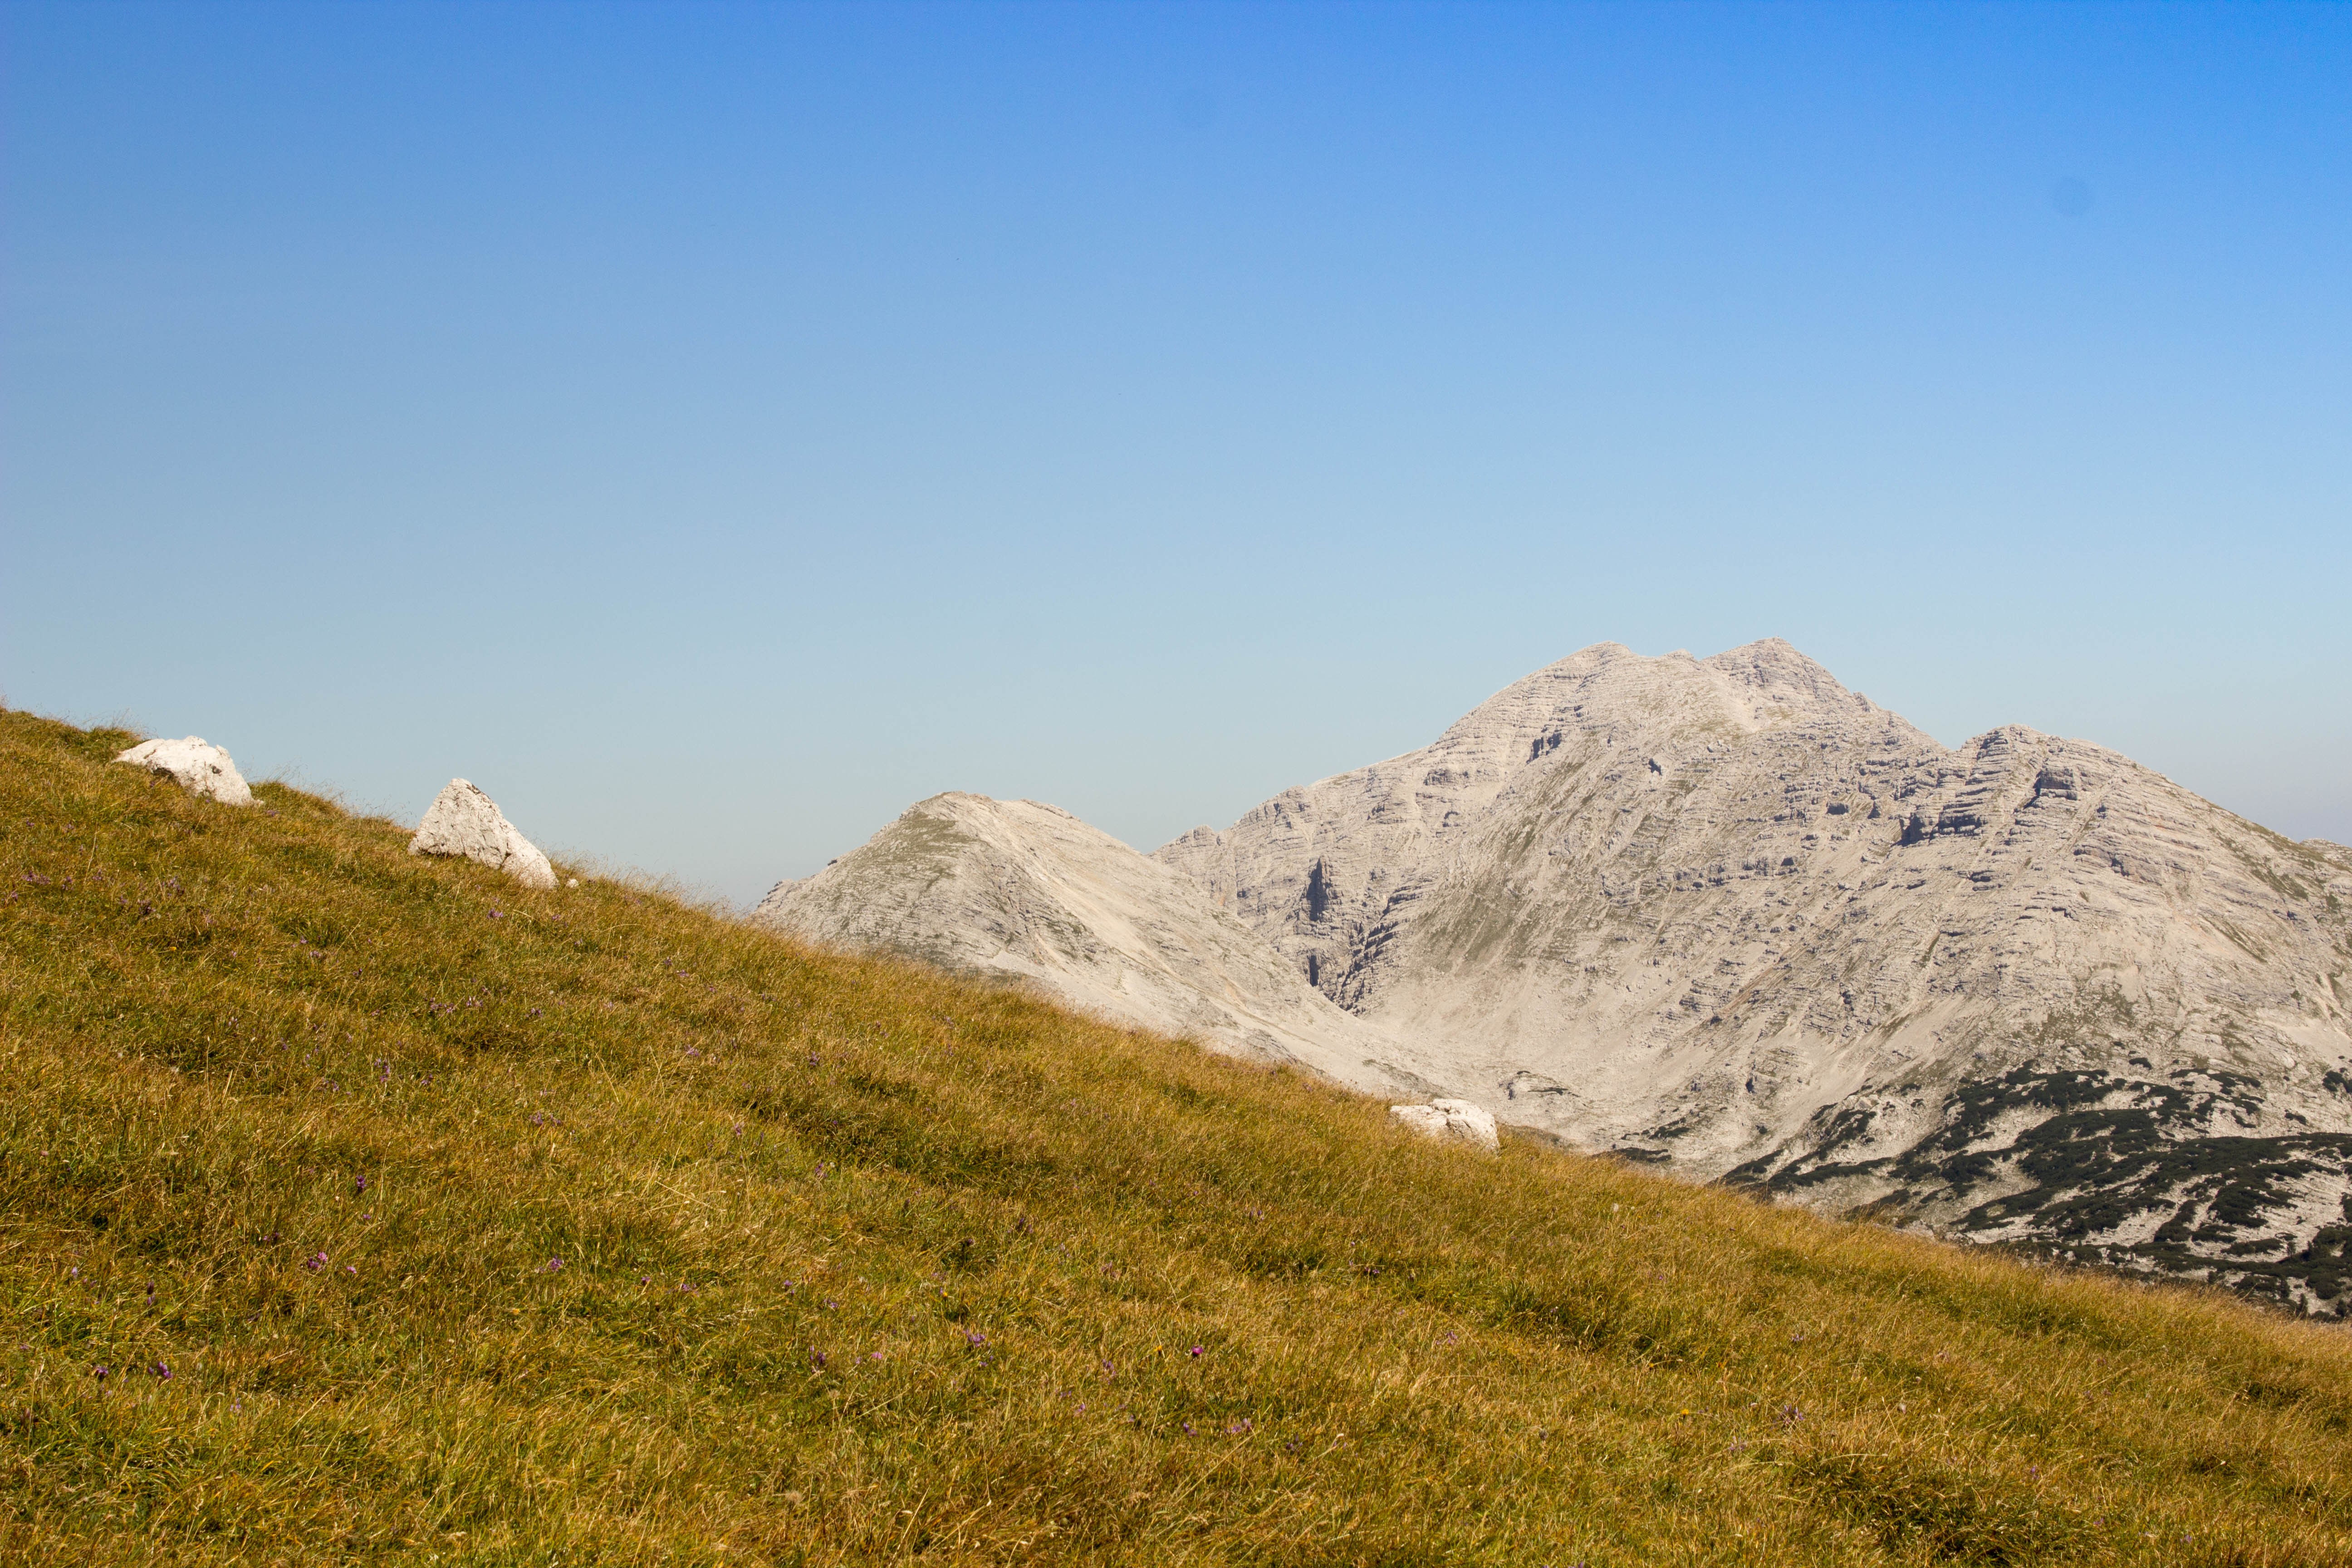 General 5184x3456 mountains landscape clear sky Austria